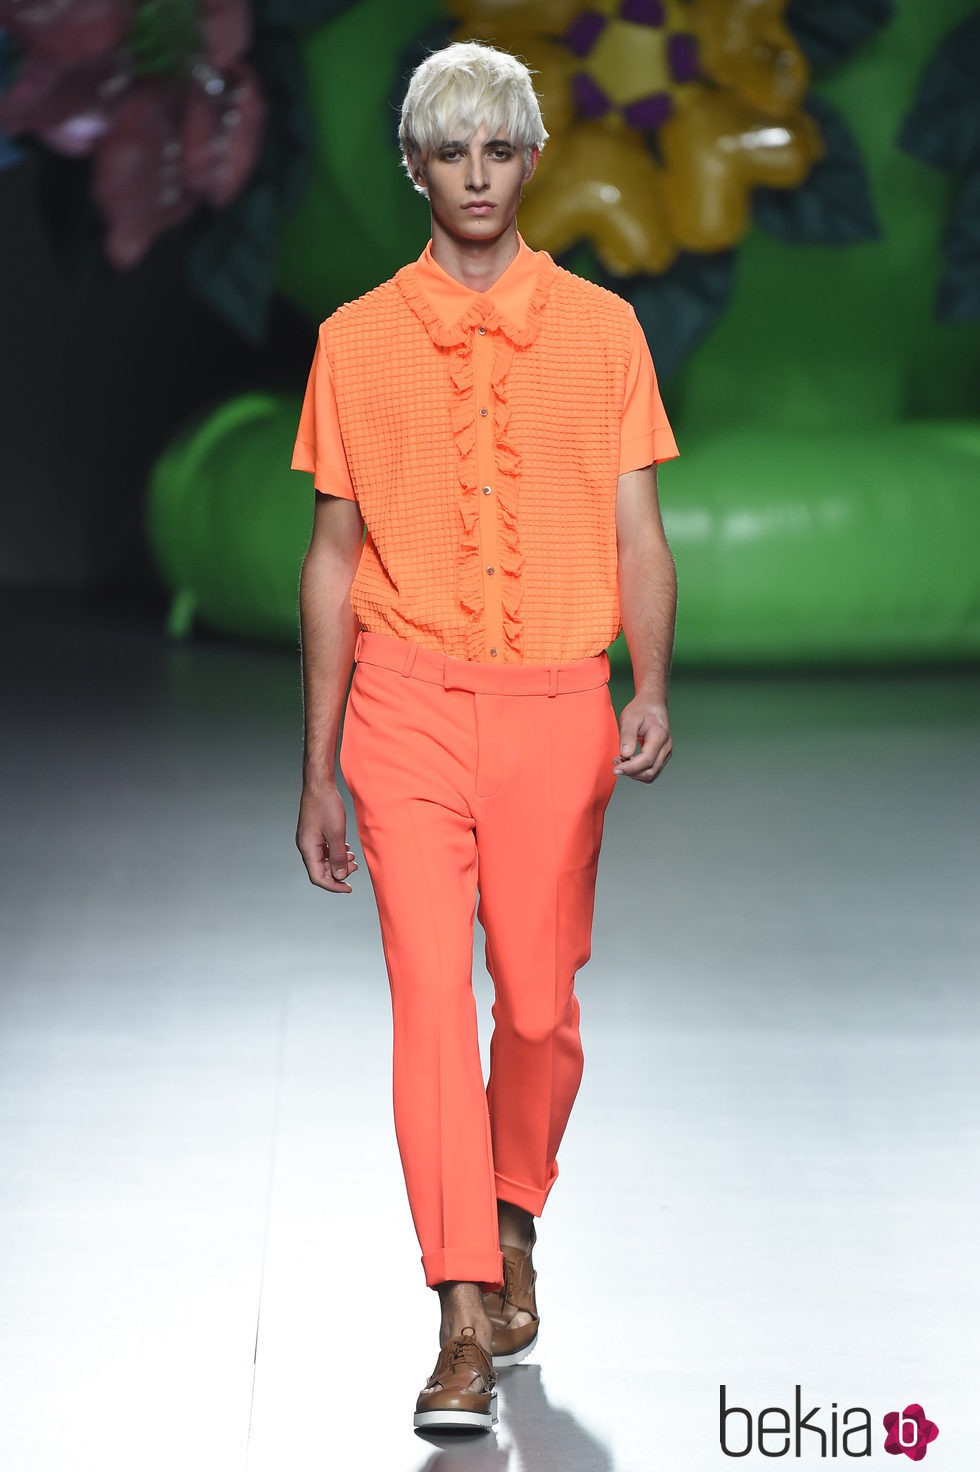 Camisa y pantalón en tonos anaranjados de la colección de primavera/verano 2016 de Ana Locking en Madrid Fashion Week